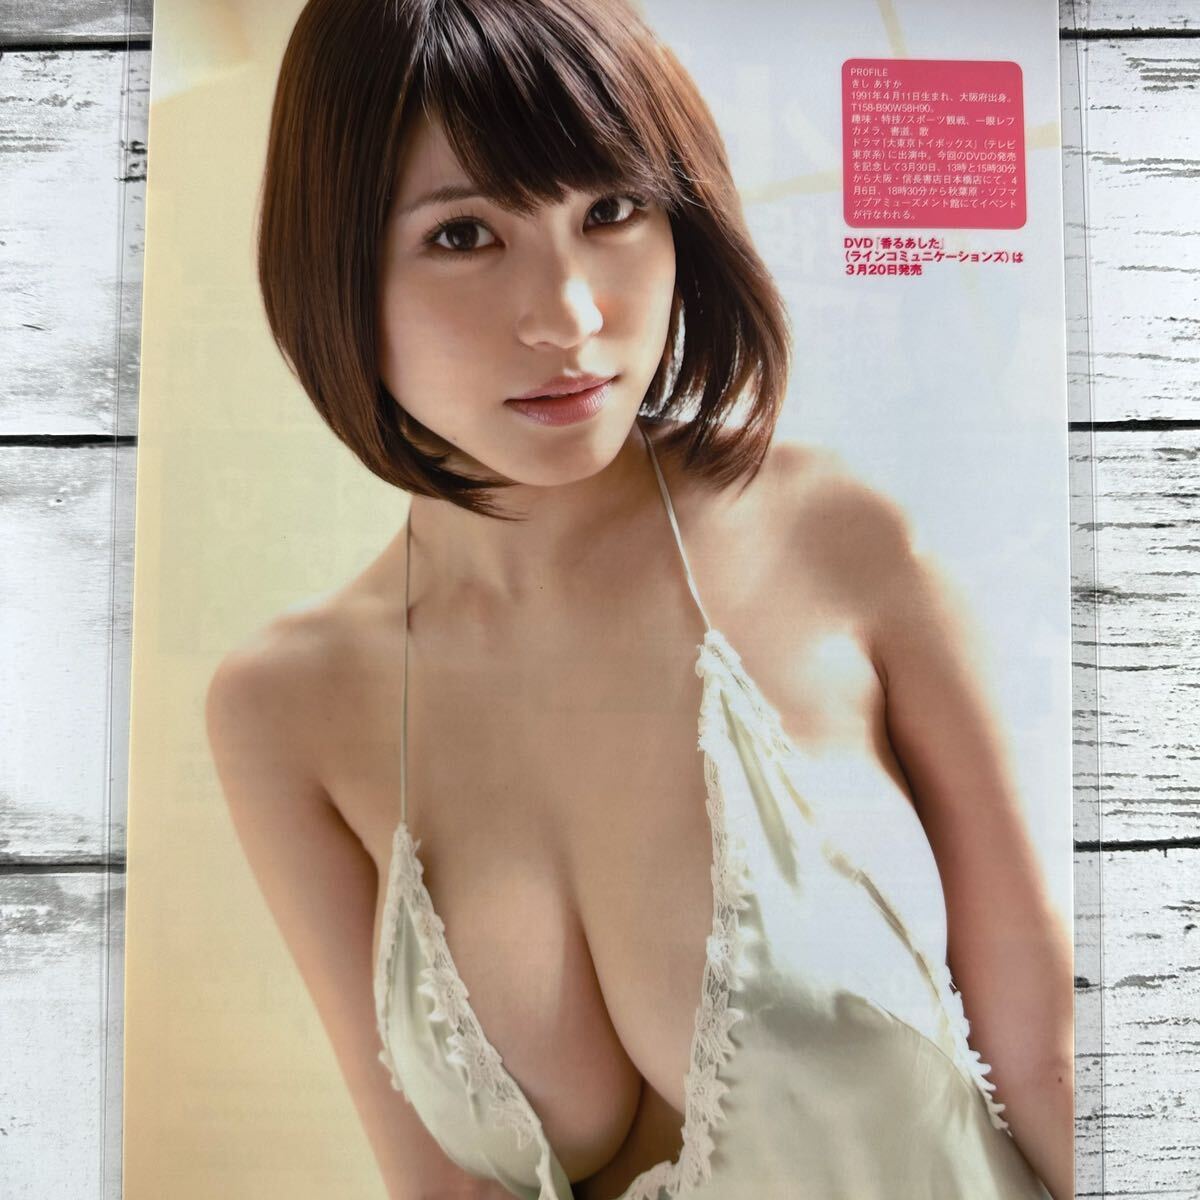 [ высокое качество ламинирование отделка ][. Akira день .] EX большой .2014 год 4 месяц номер журнал вырезки 3P A4 плёнка купальный костюм bikini model актер женщина super 